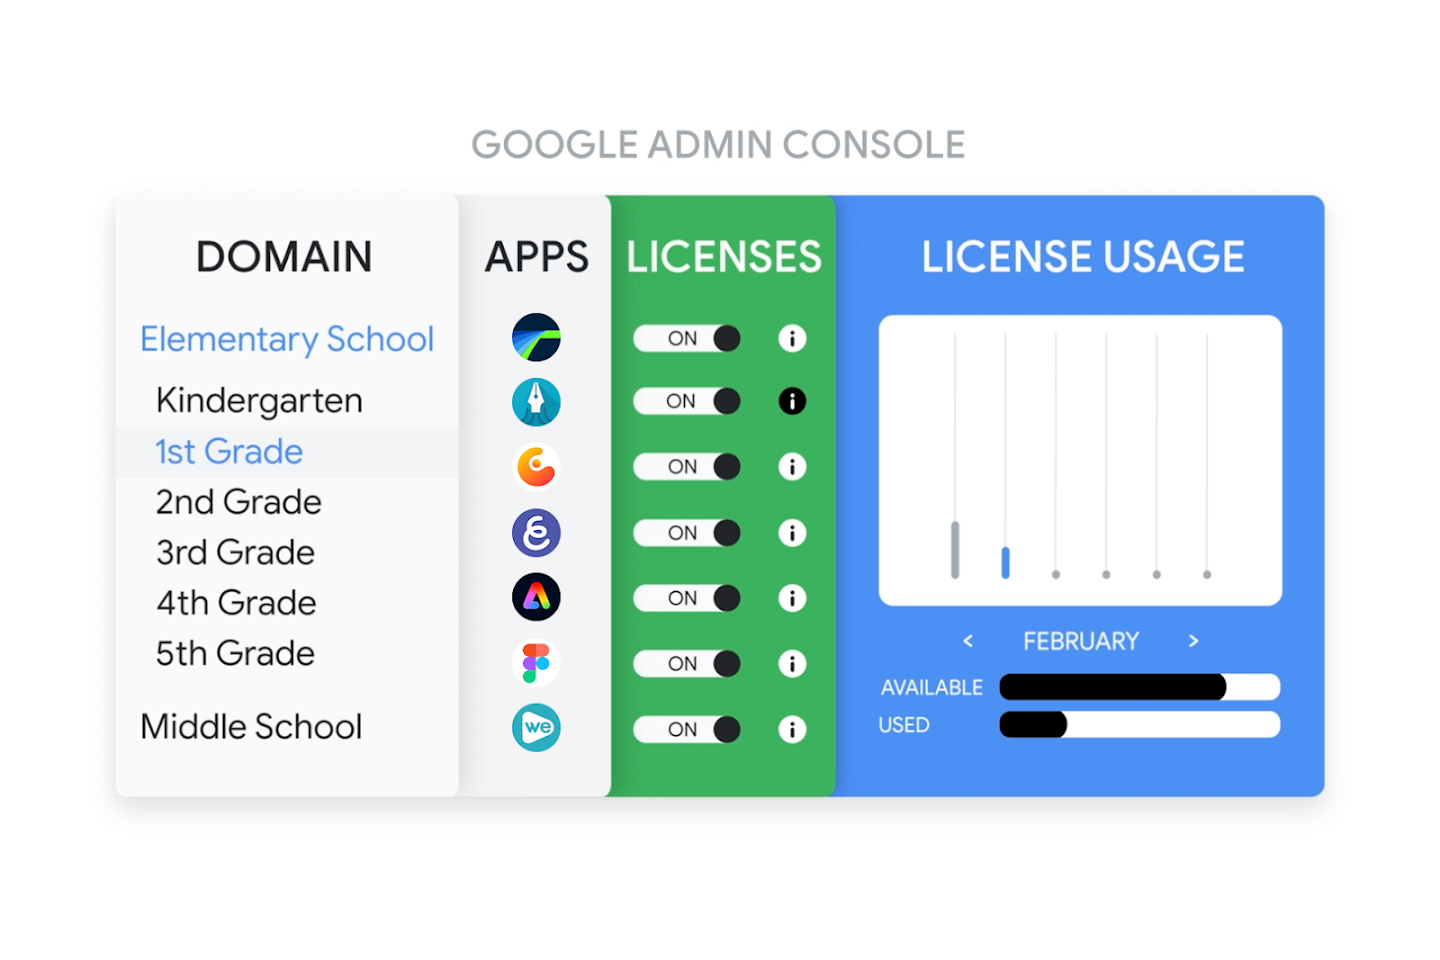 Visual yang menampilkan pemberian lisensi aplikasi di konsol Google Admin dengan aplikasi yang disediakan untuk siswa